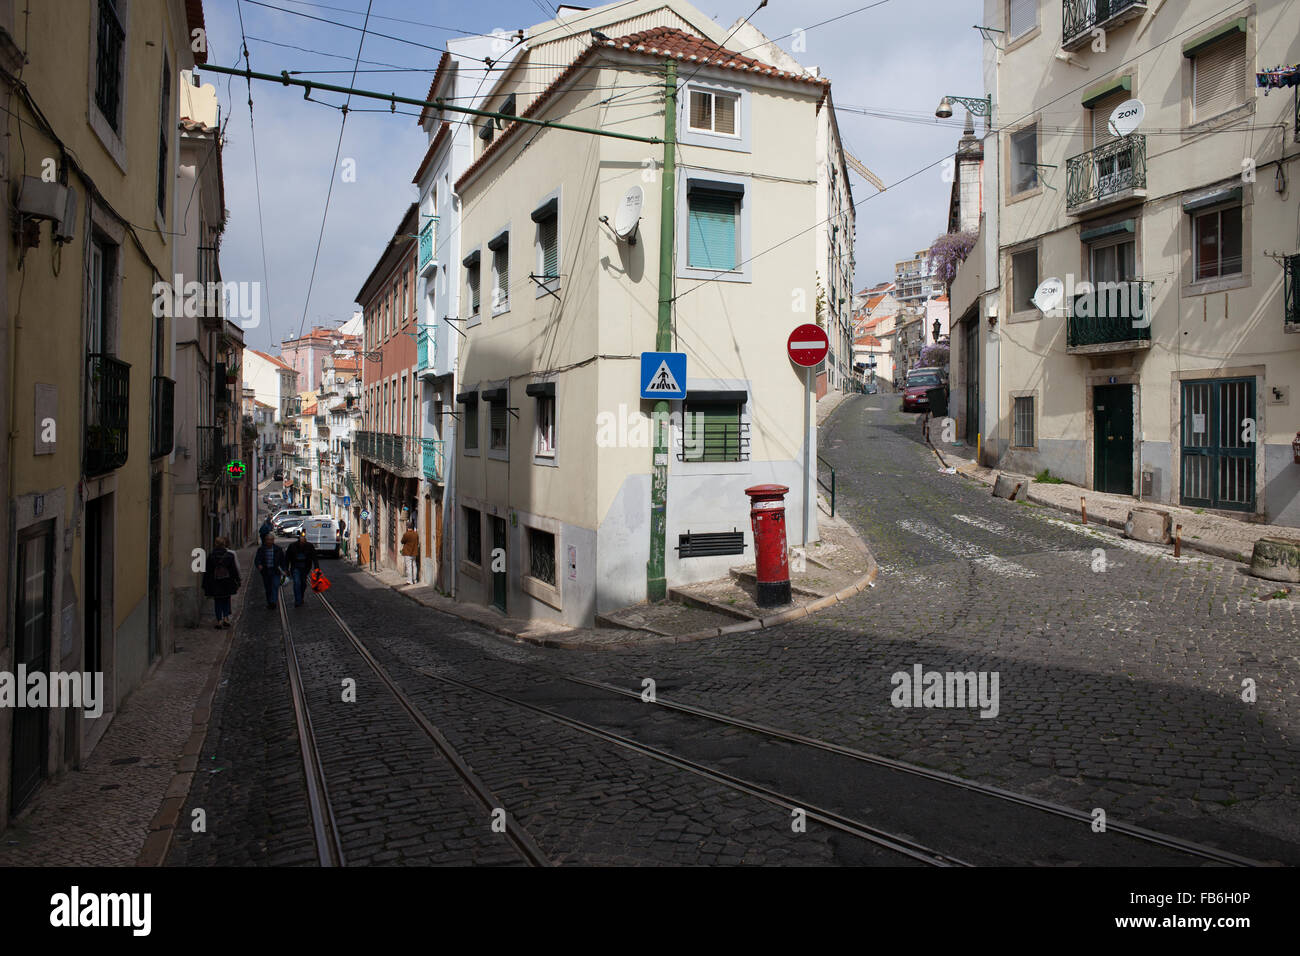 Lisbona in Portogallo, strade e case nel vecchio quartiere della città Foto Stock